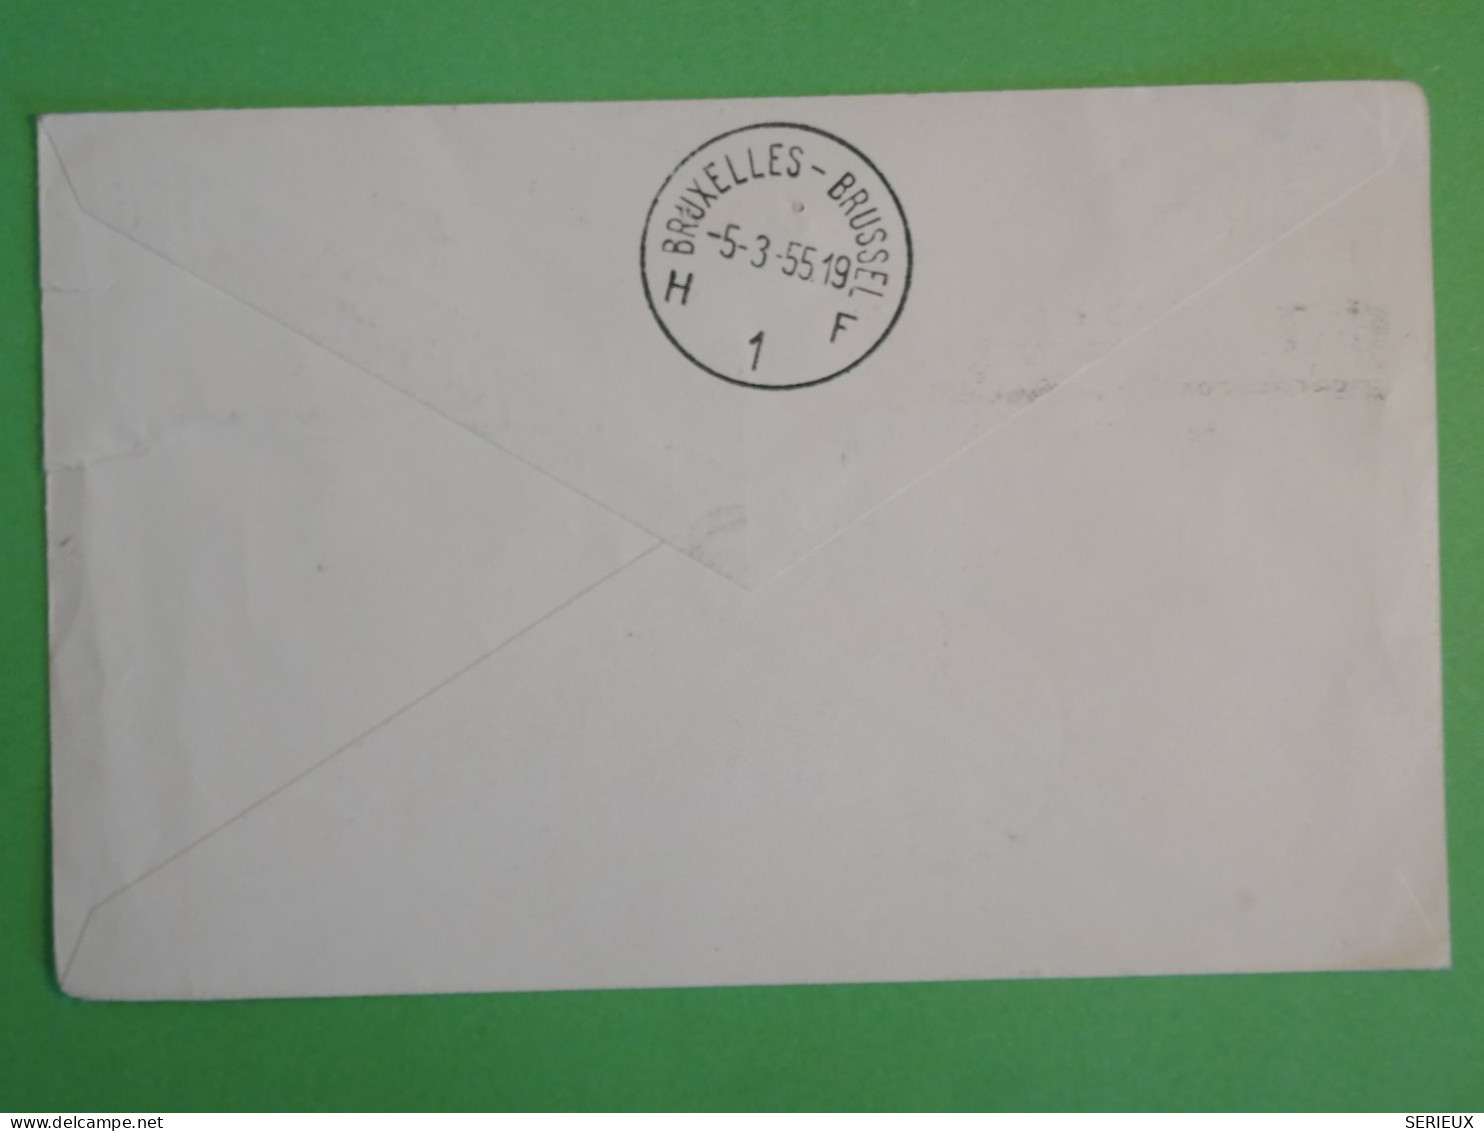 BS16 CONGO BELGE   BELLE LETTRE RR 1958  LIAISON AVION  LEOPOLDVILLE A JETTE BELGIQUE  + AFFR. PLAISANT++ ++ - Lettres & Documents